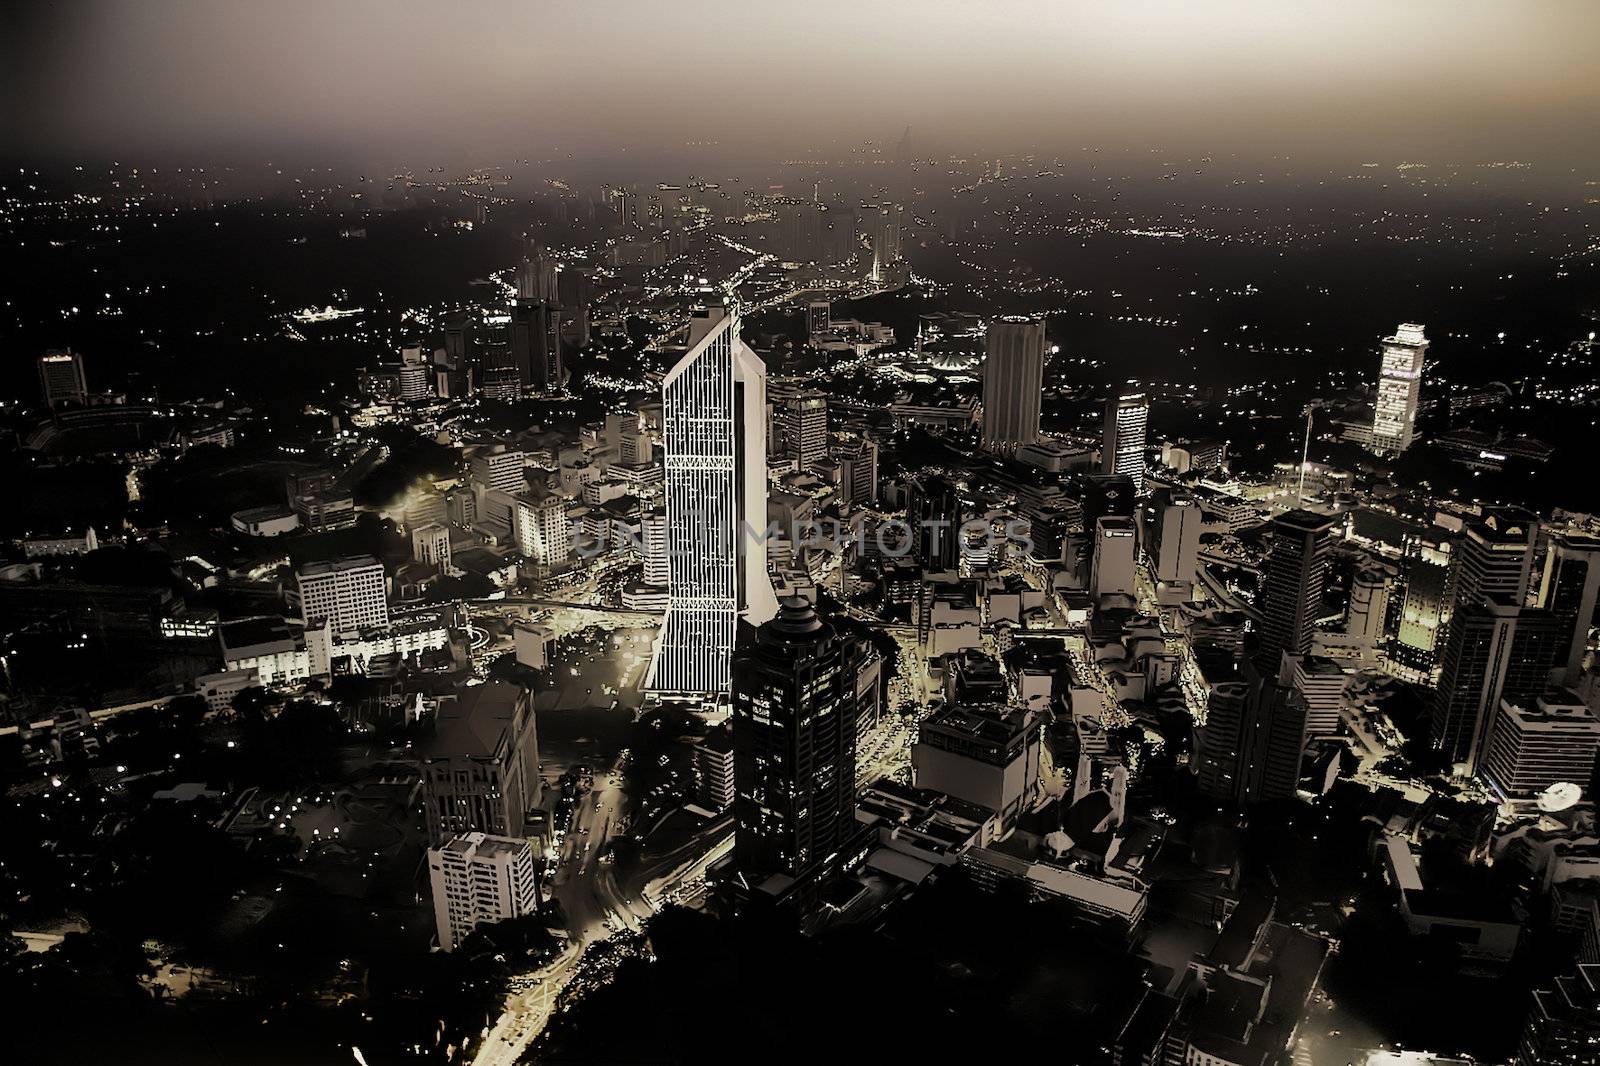  Cityscape of downtown Kuala Lumpur at night